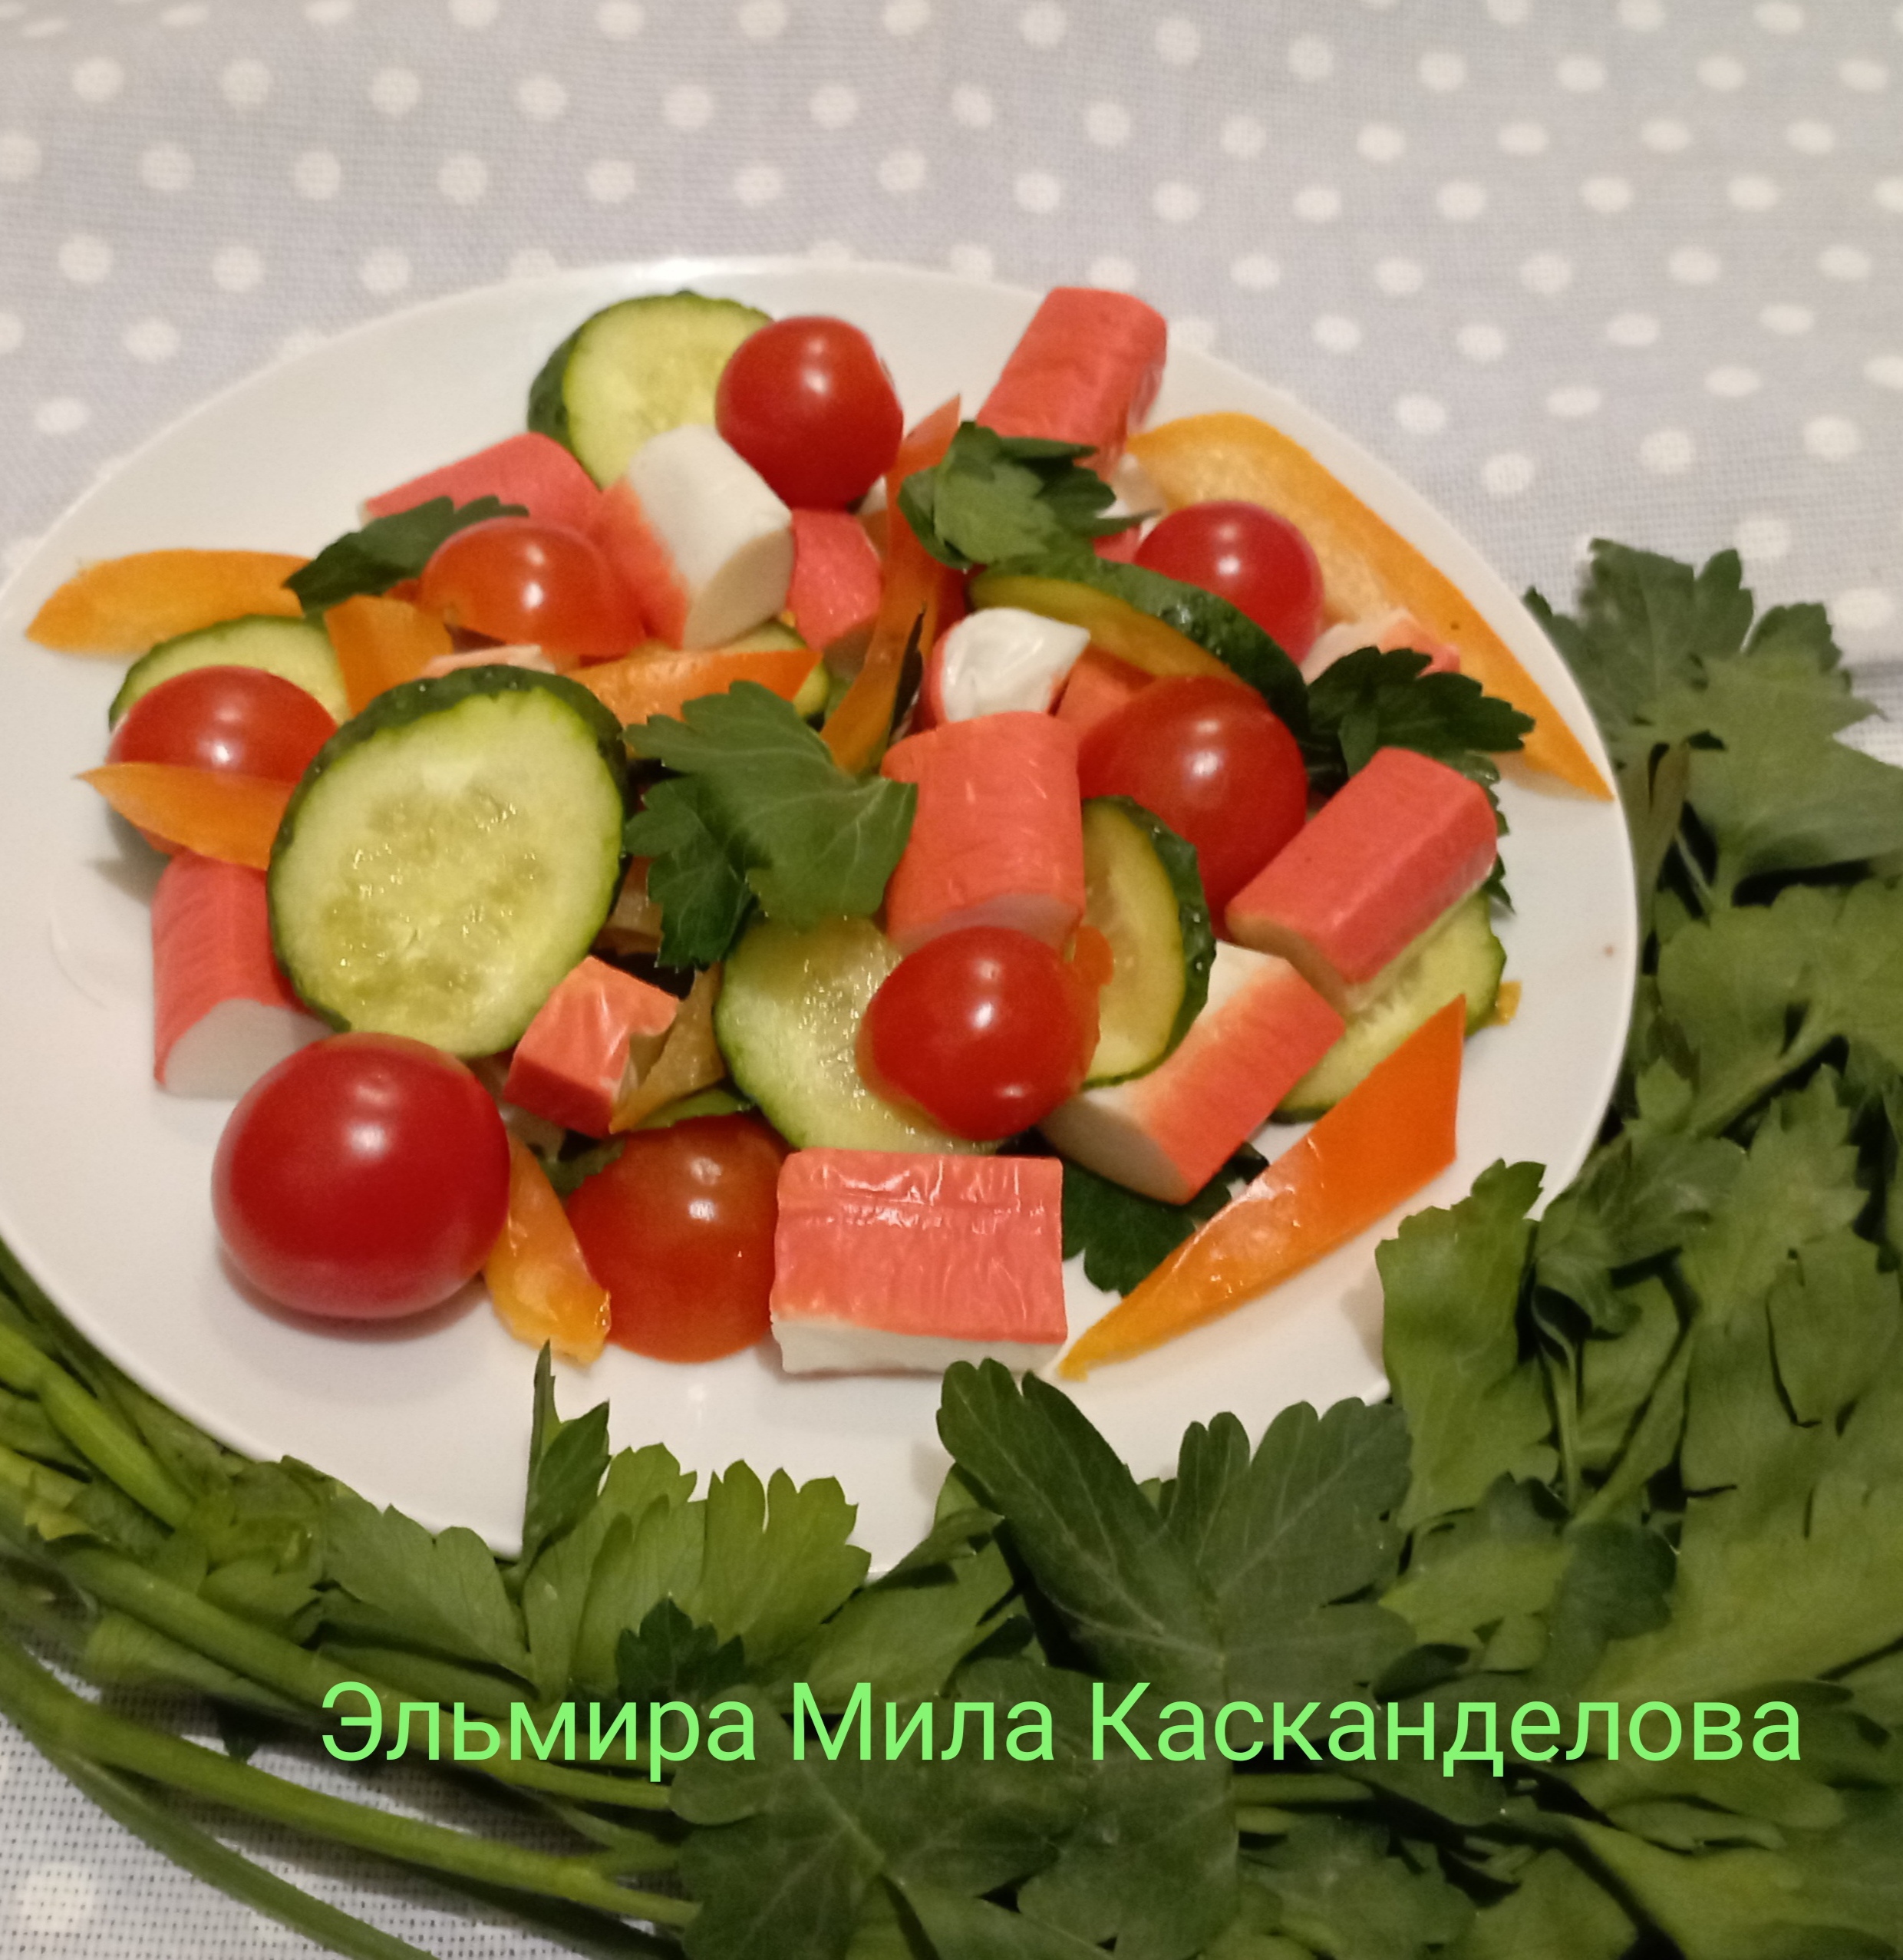 Салат из болгарского перца с крабовыми палочками